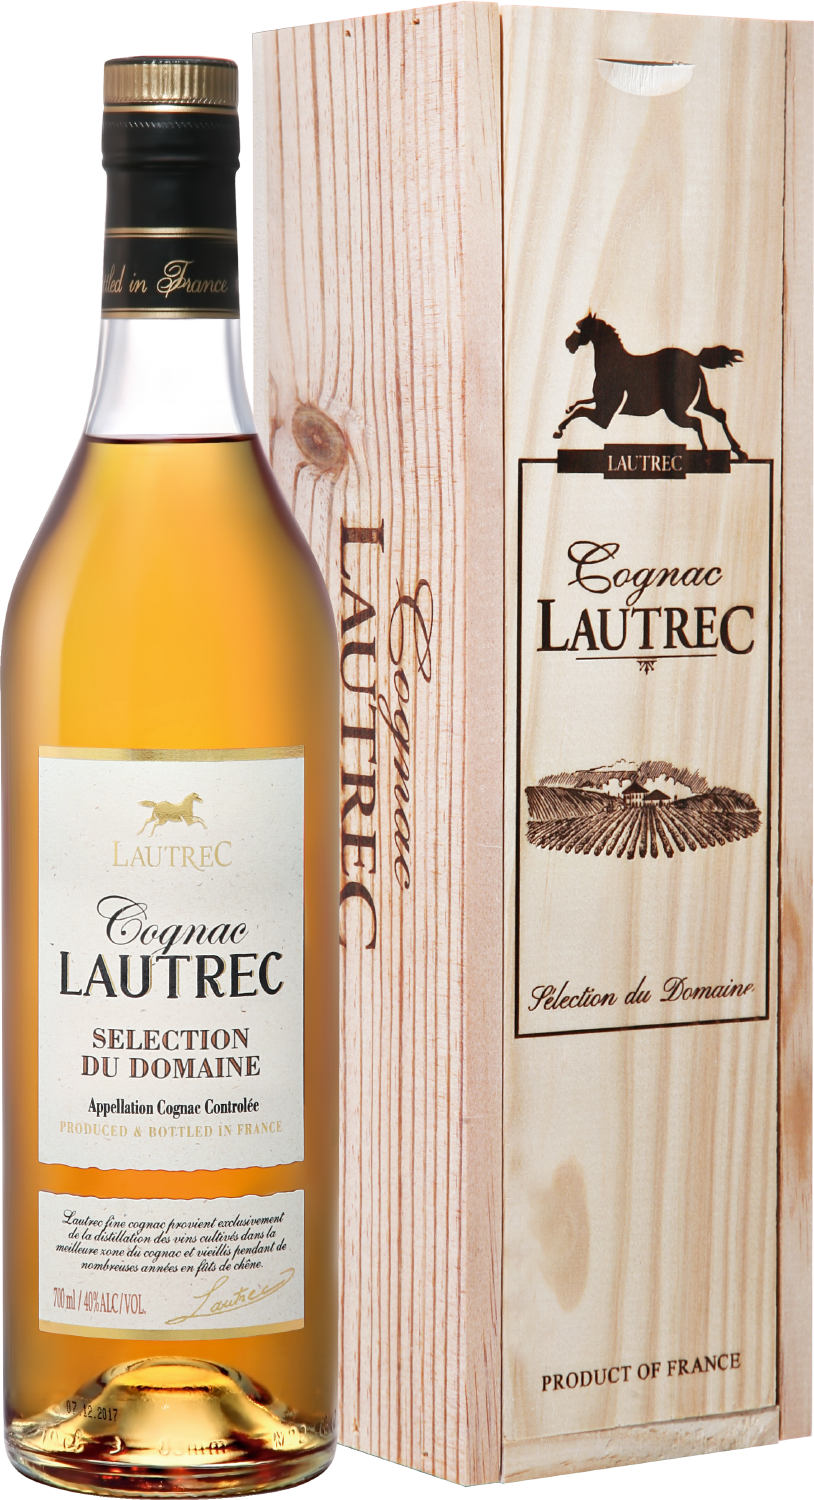 Lautrec Cognac Selection du Domaine (gift box) châteauneuf du pape aoc domaine des chanssaud gift box